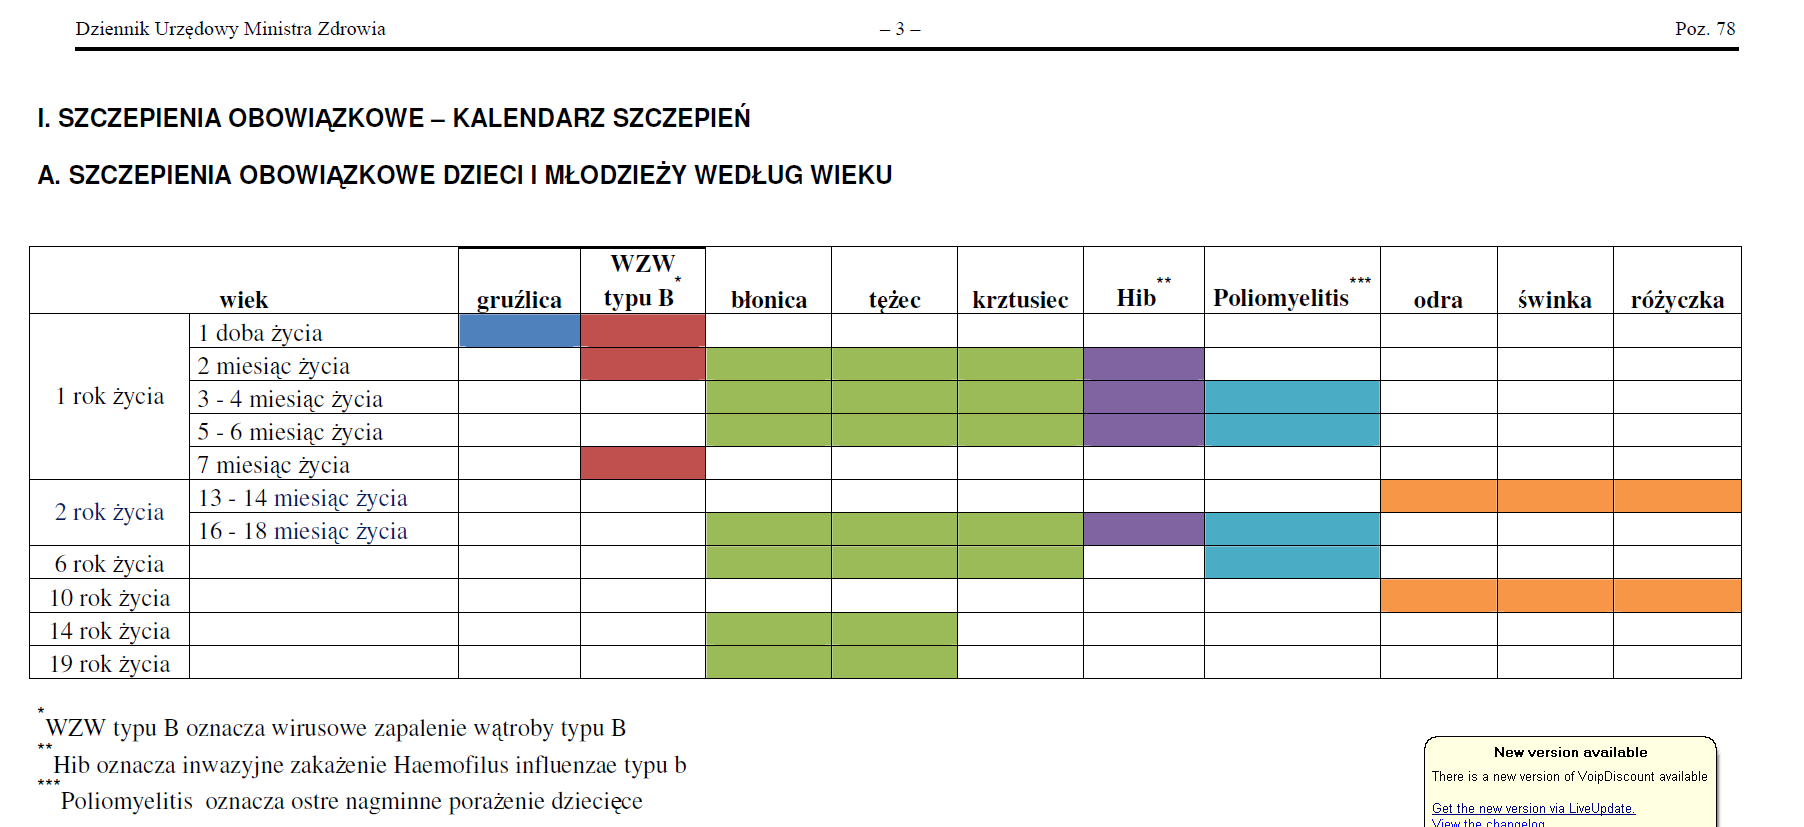 Polski kalendarz szczepień